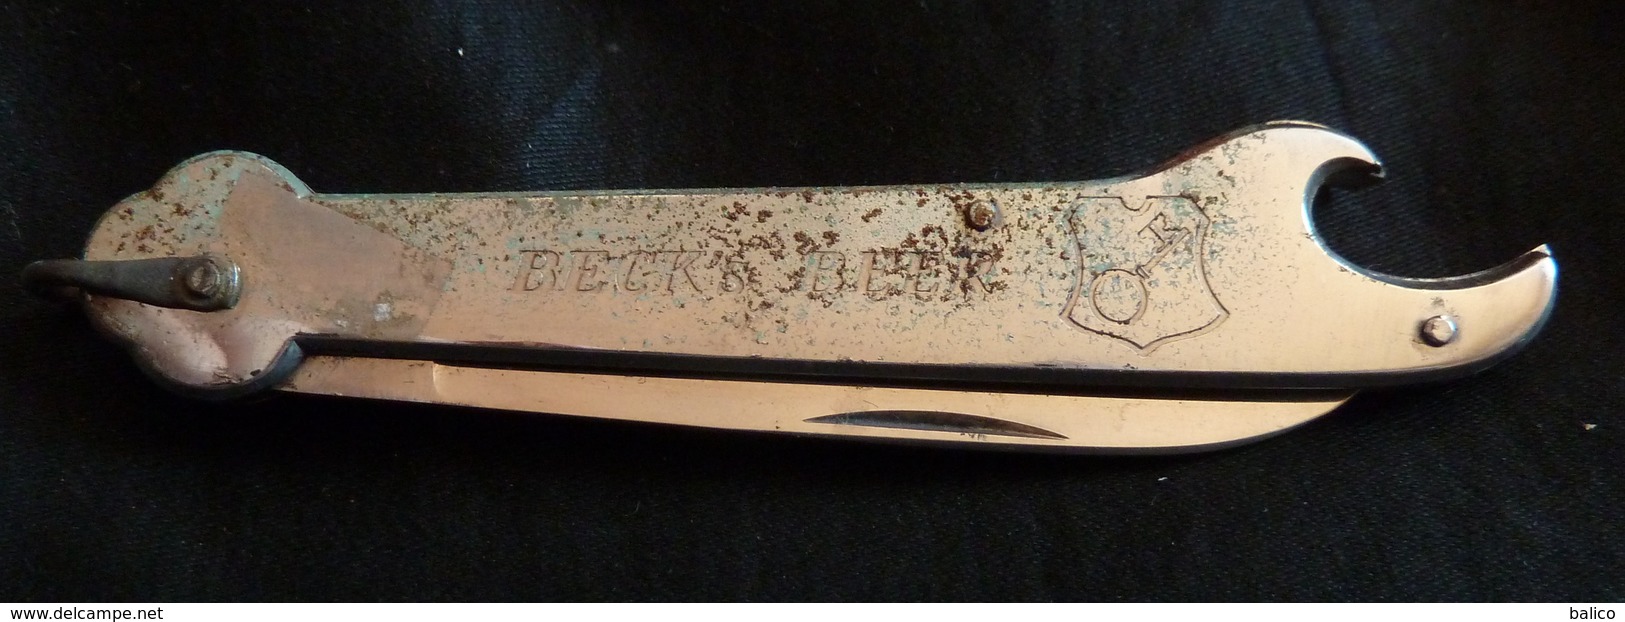 Couteau Avec Publicité, Beck's Béer Et Décapsuleur - Knives